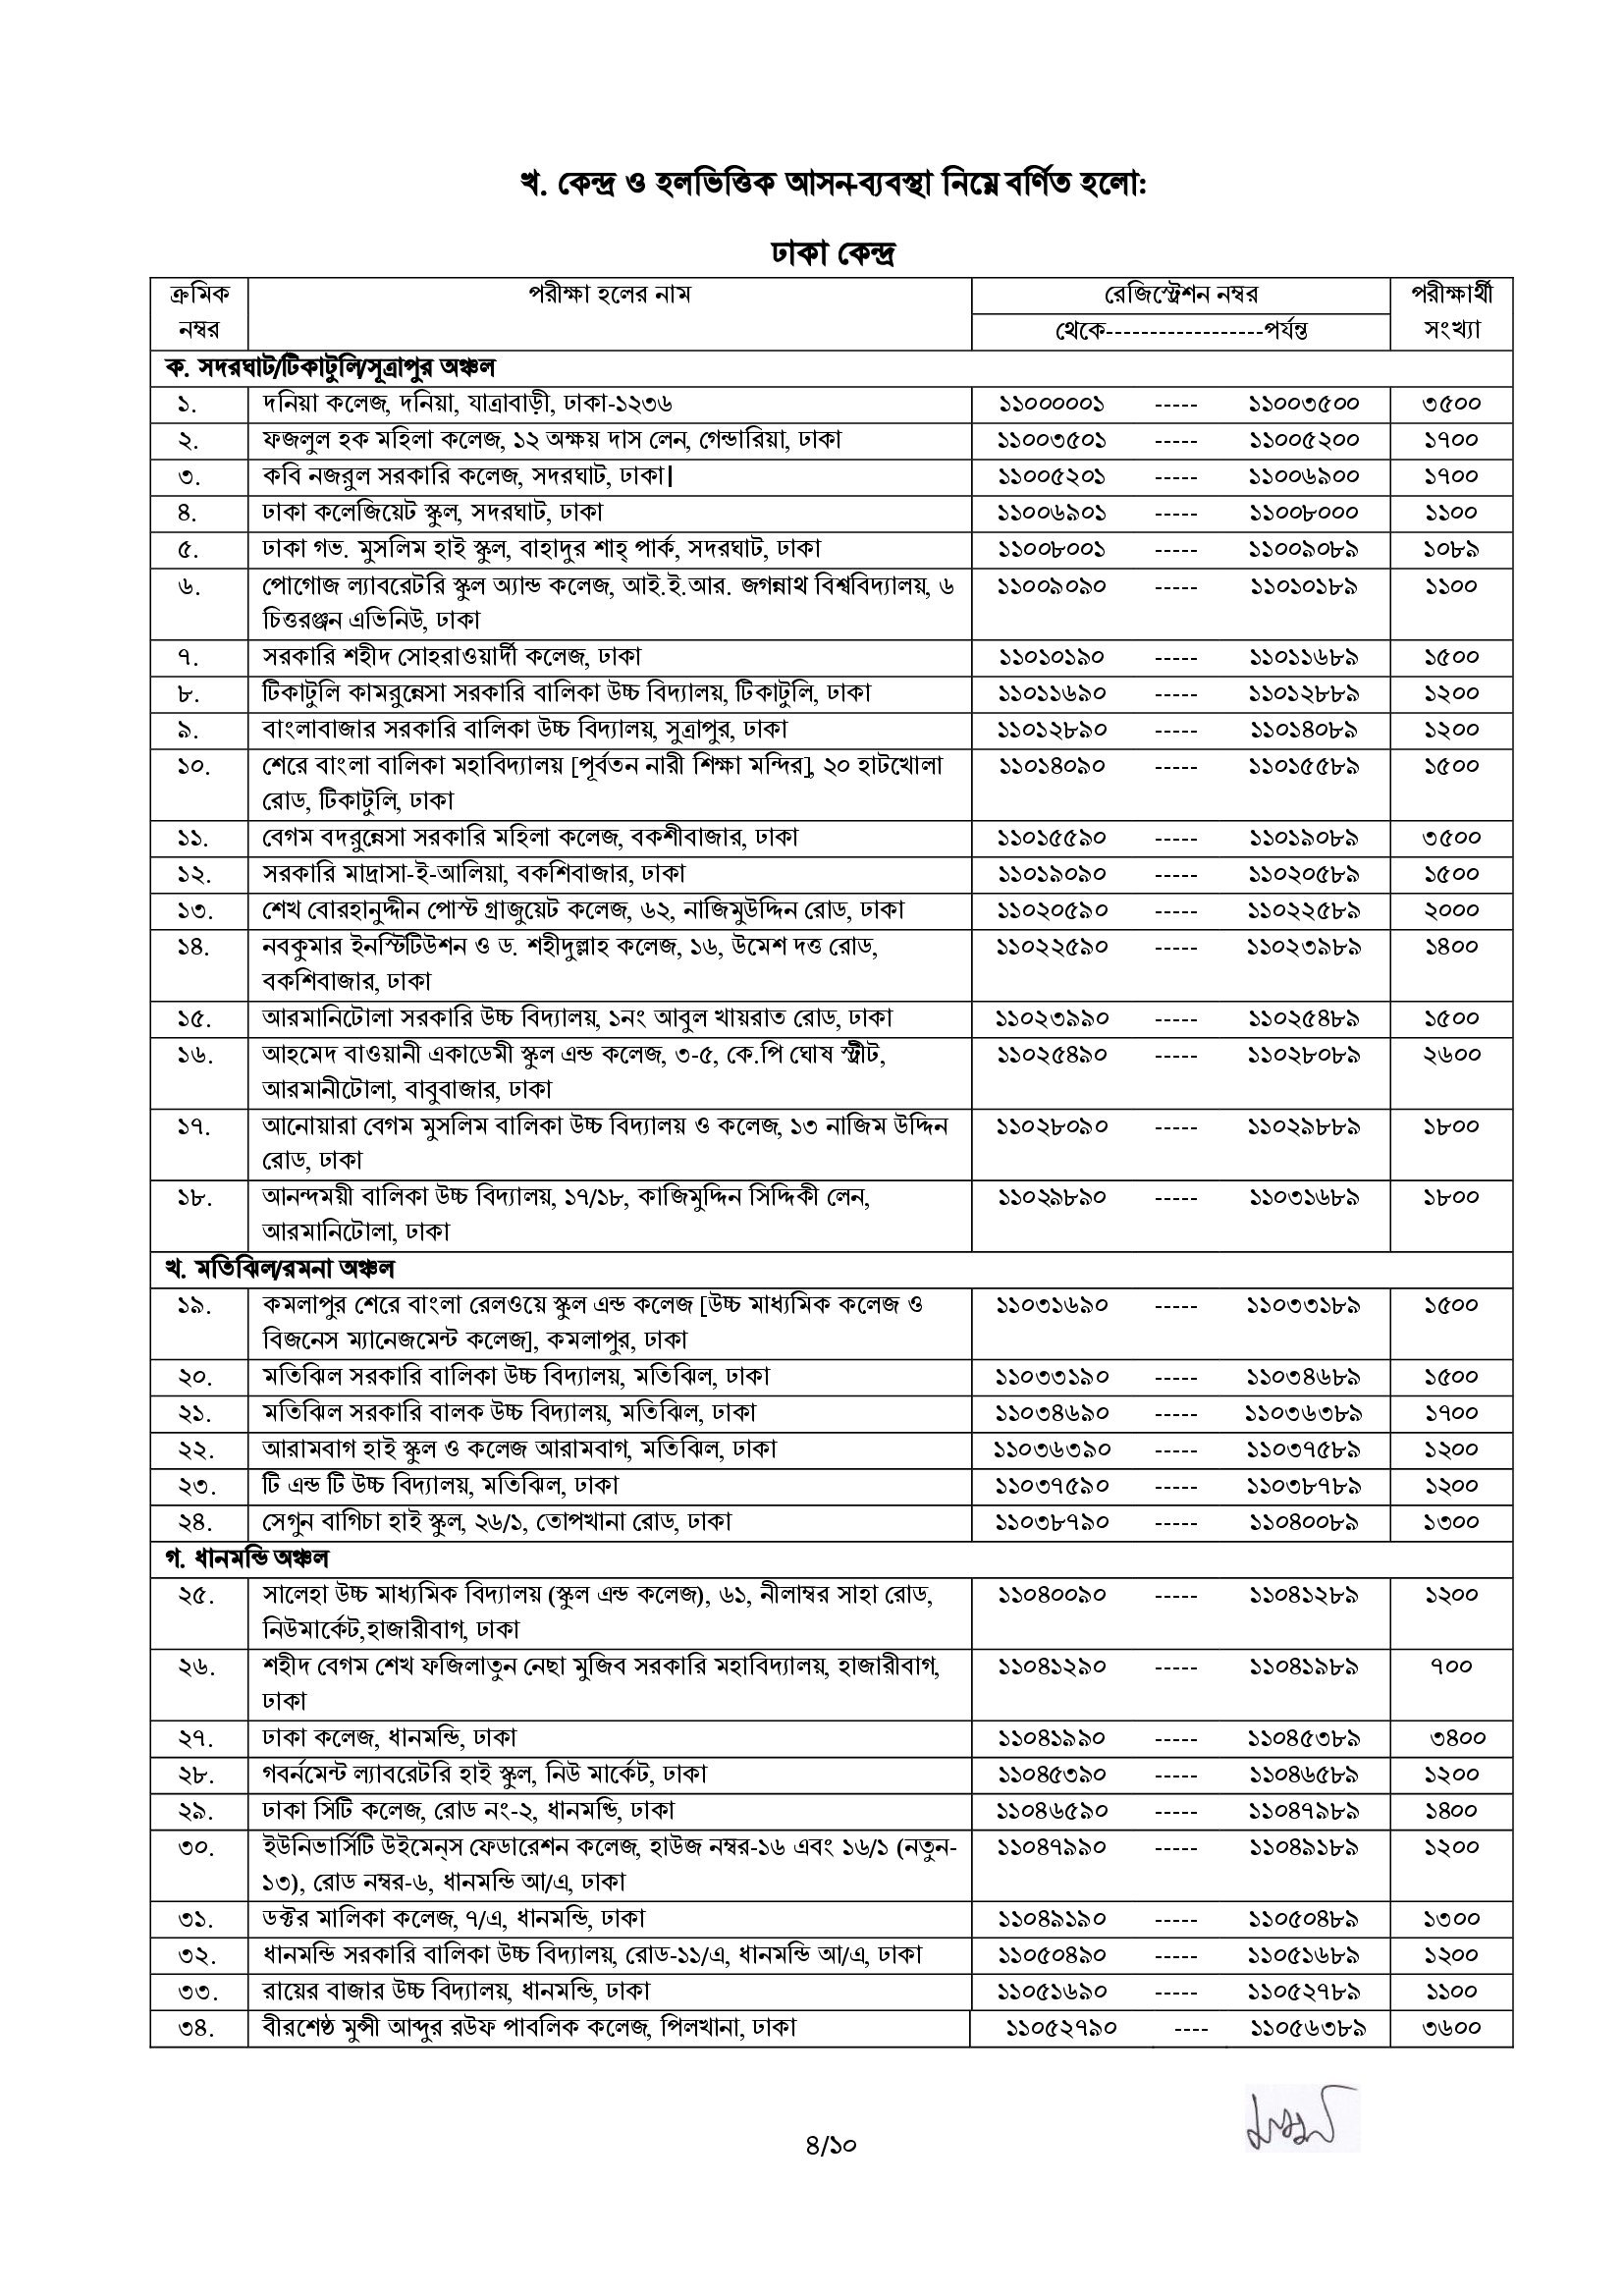 43rd BCS Written Exam Schedule & Seat Plan 2022